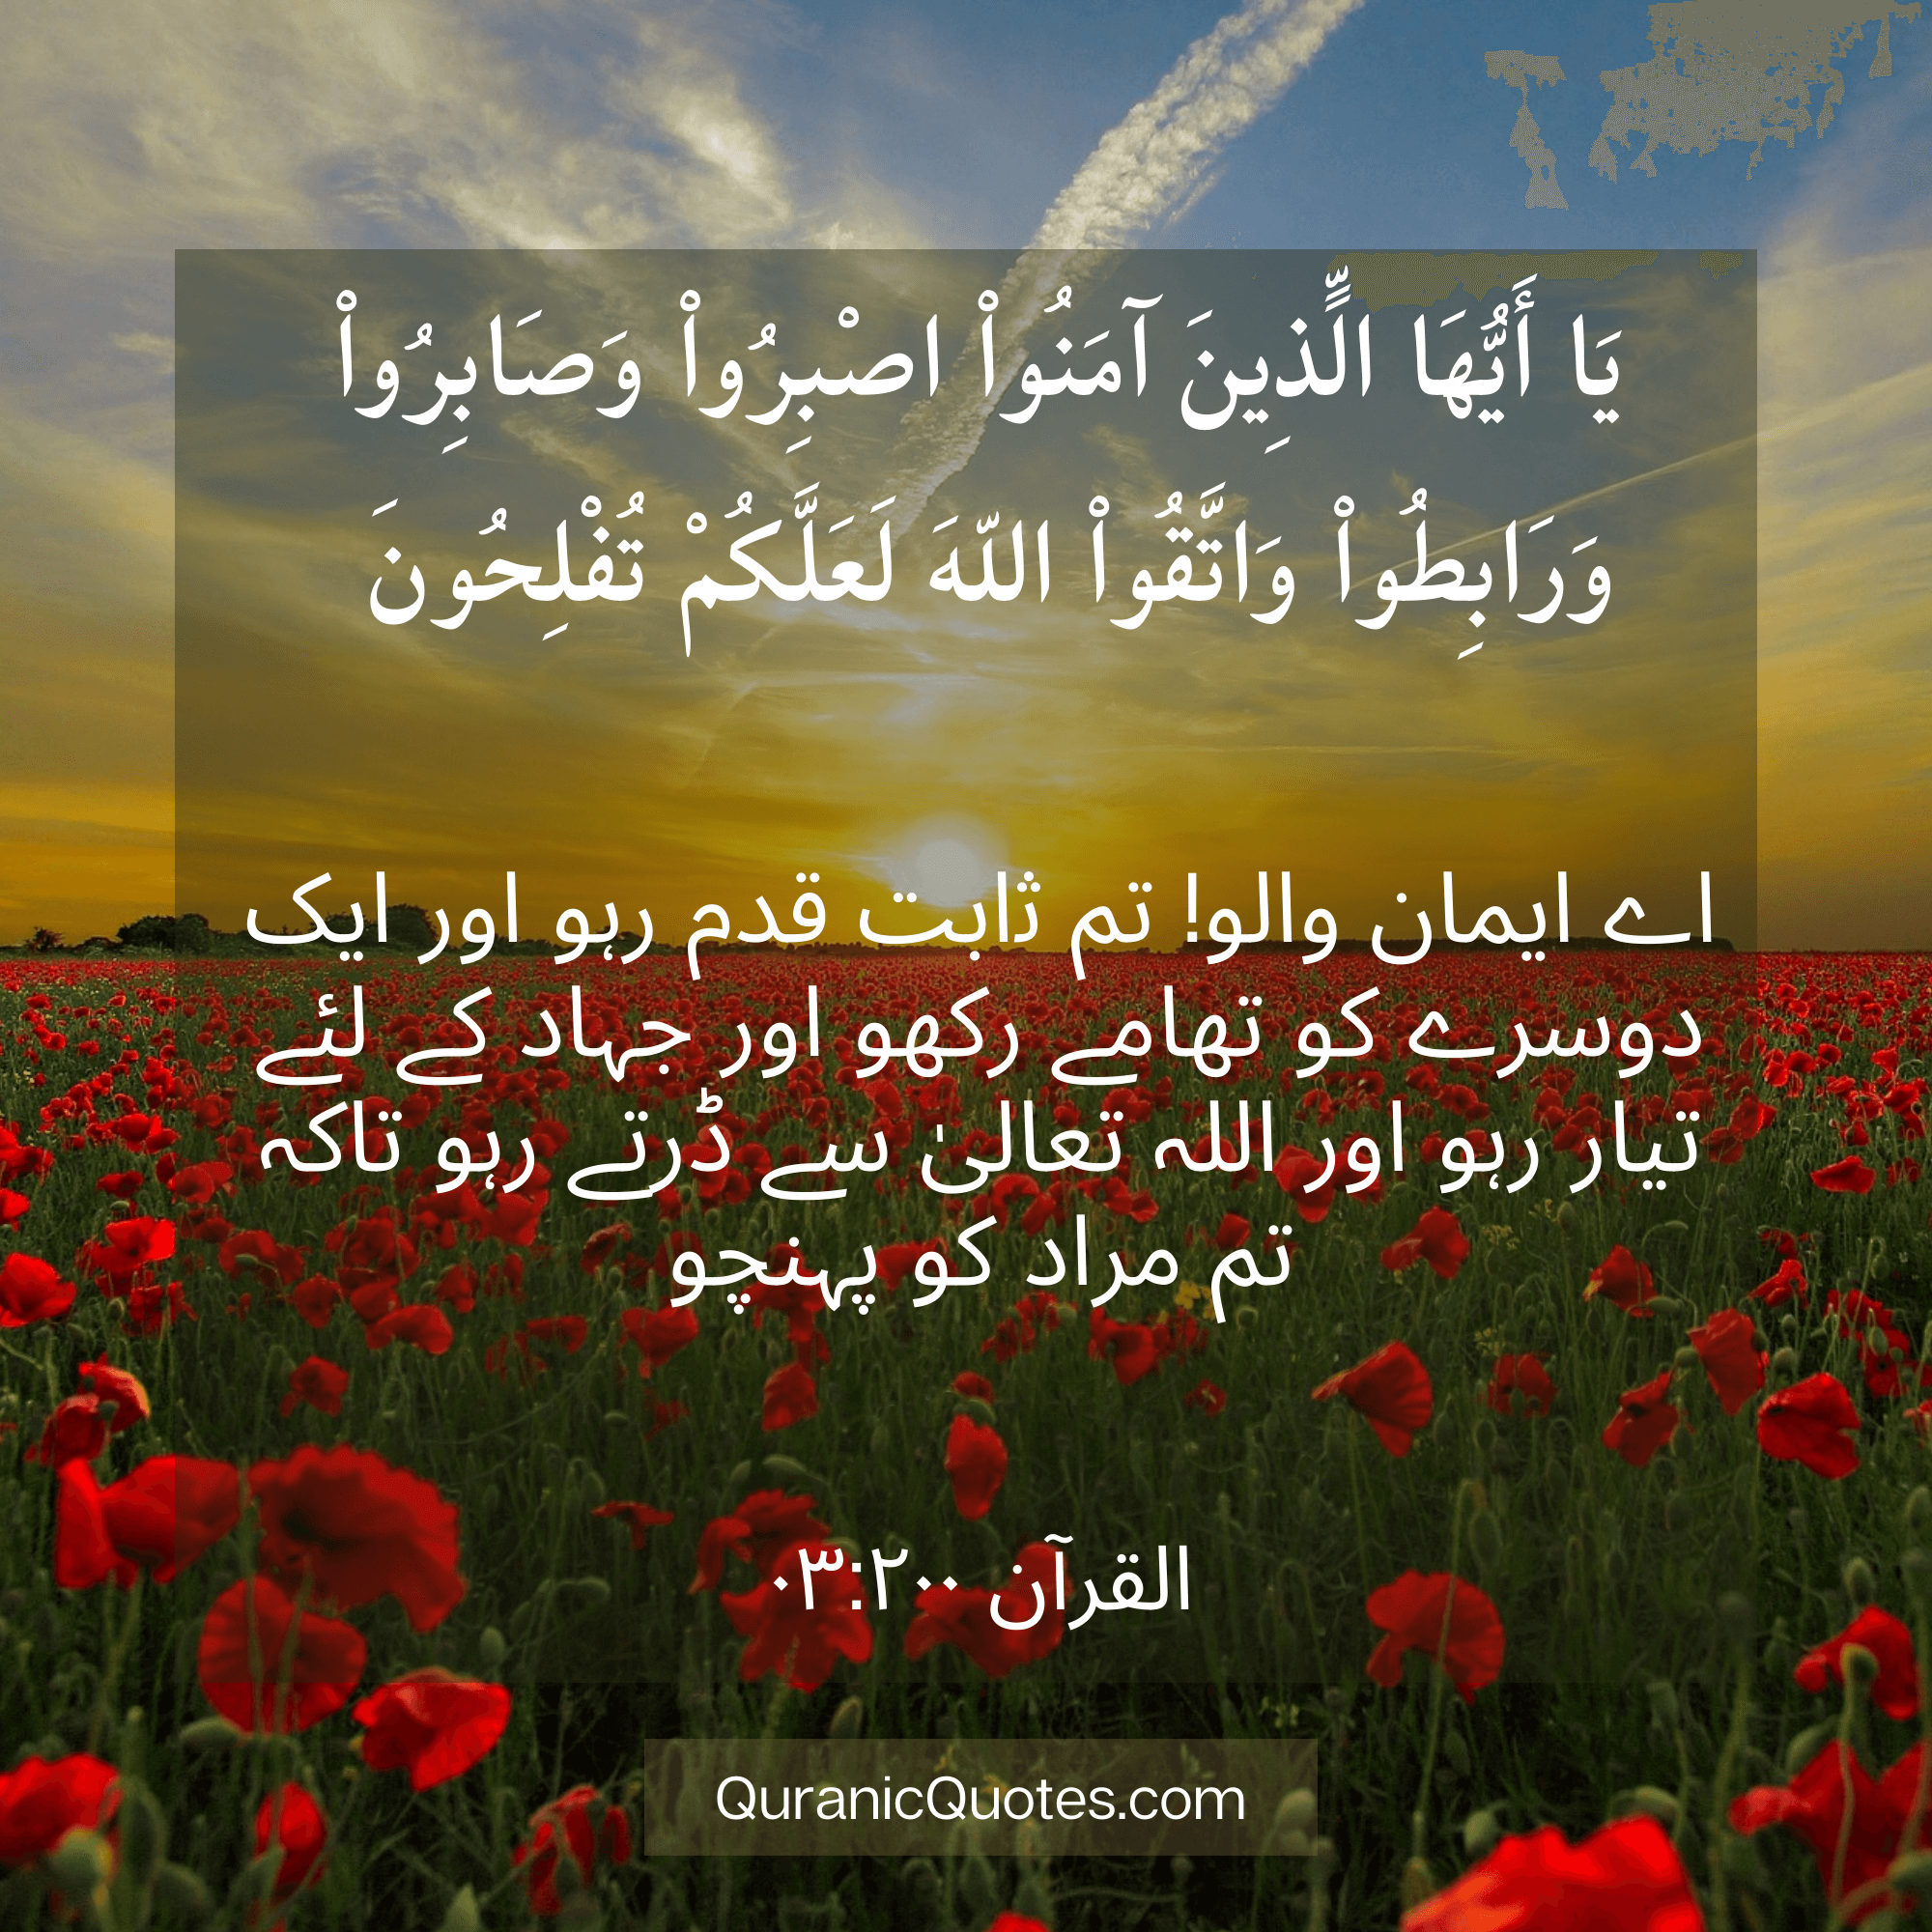 Quranic Quotes in Urdu 508